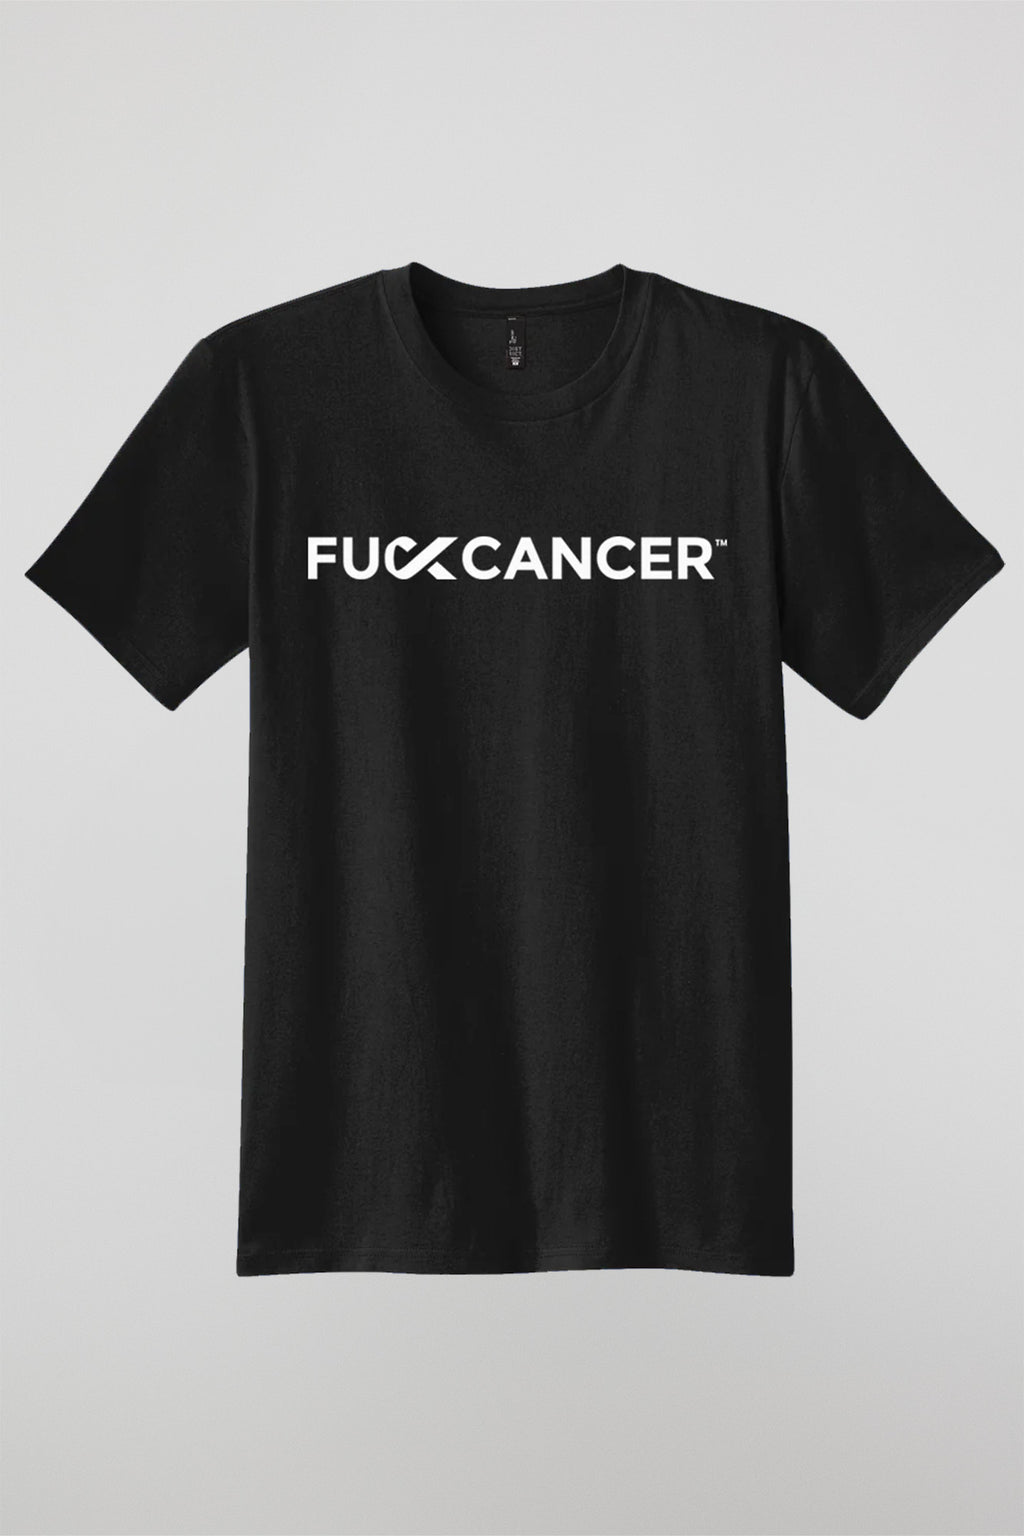 Unisex Lung Cancer T-shirt